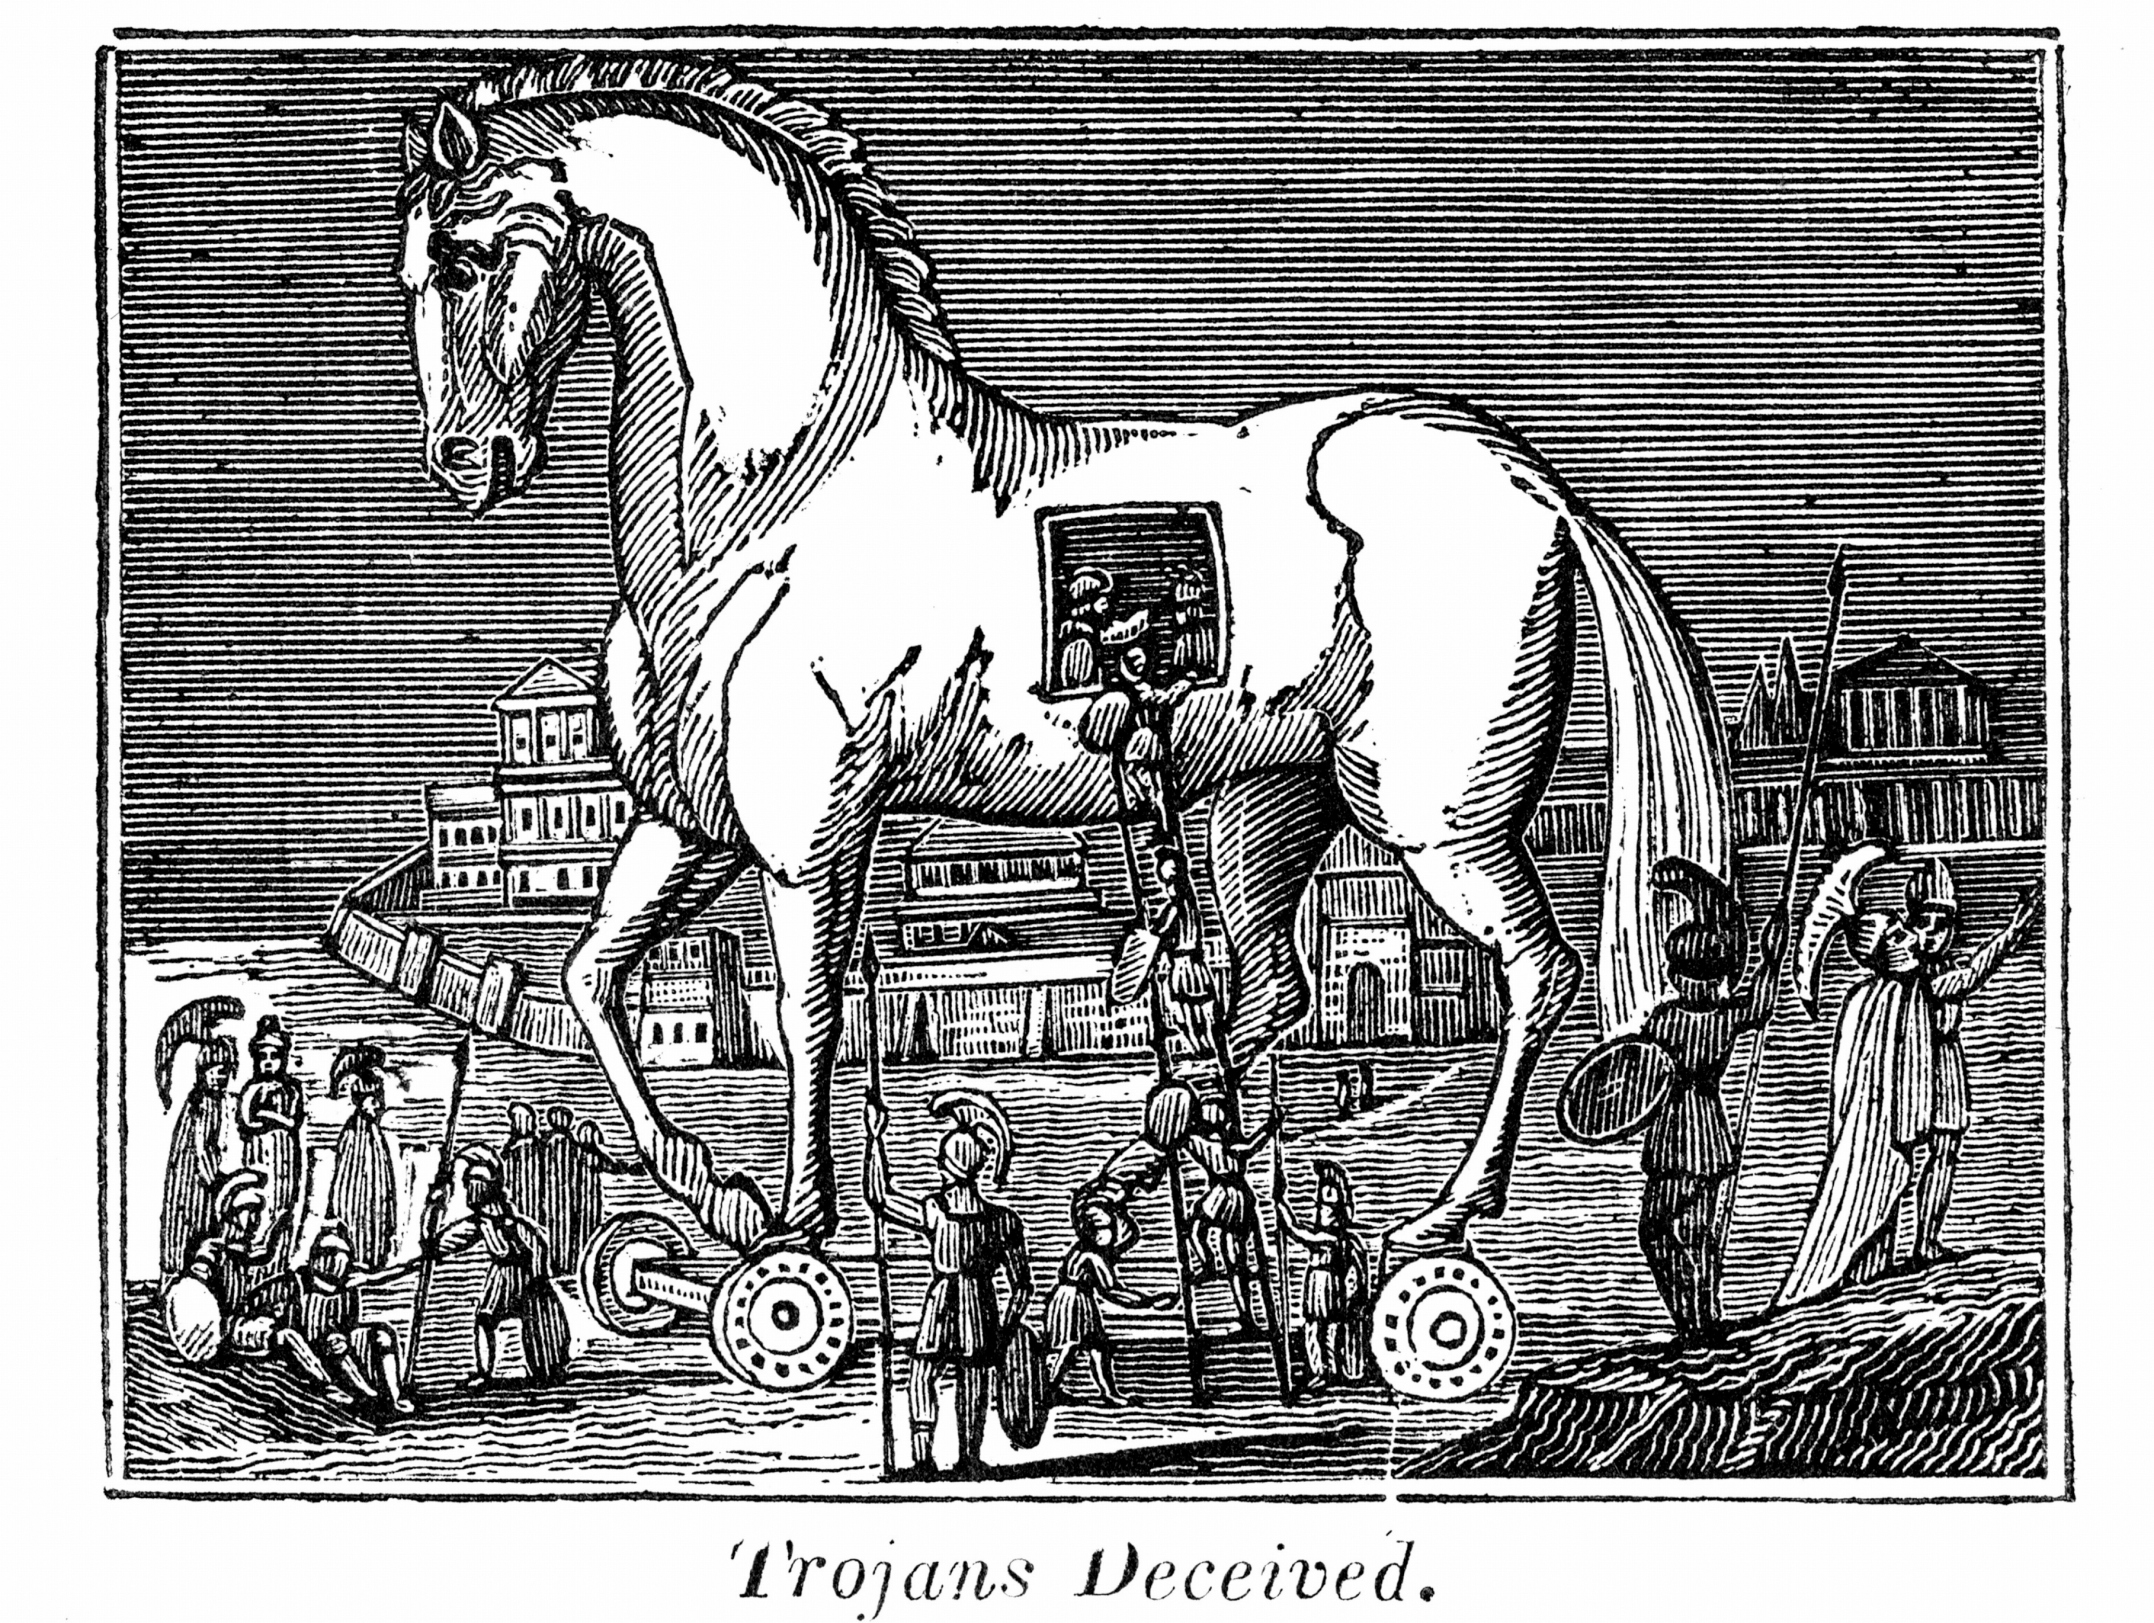 trojan horse inside